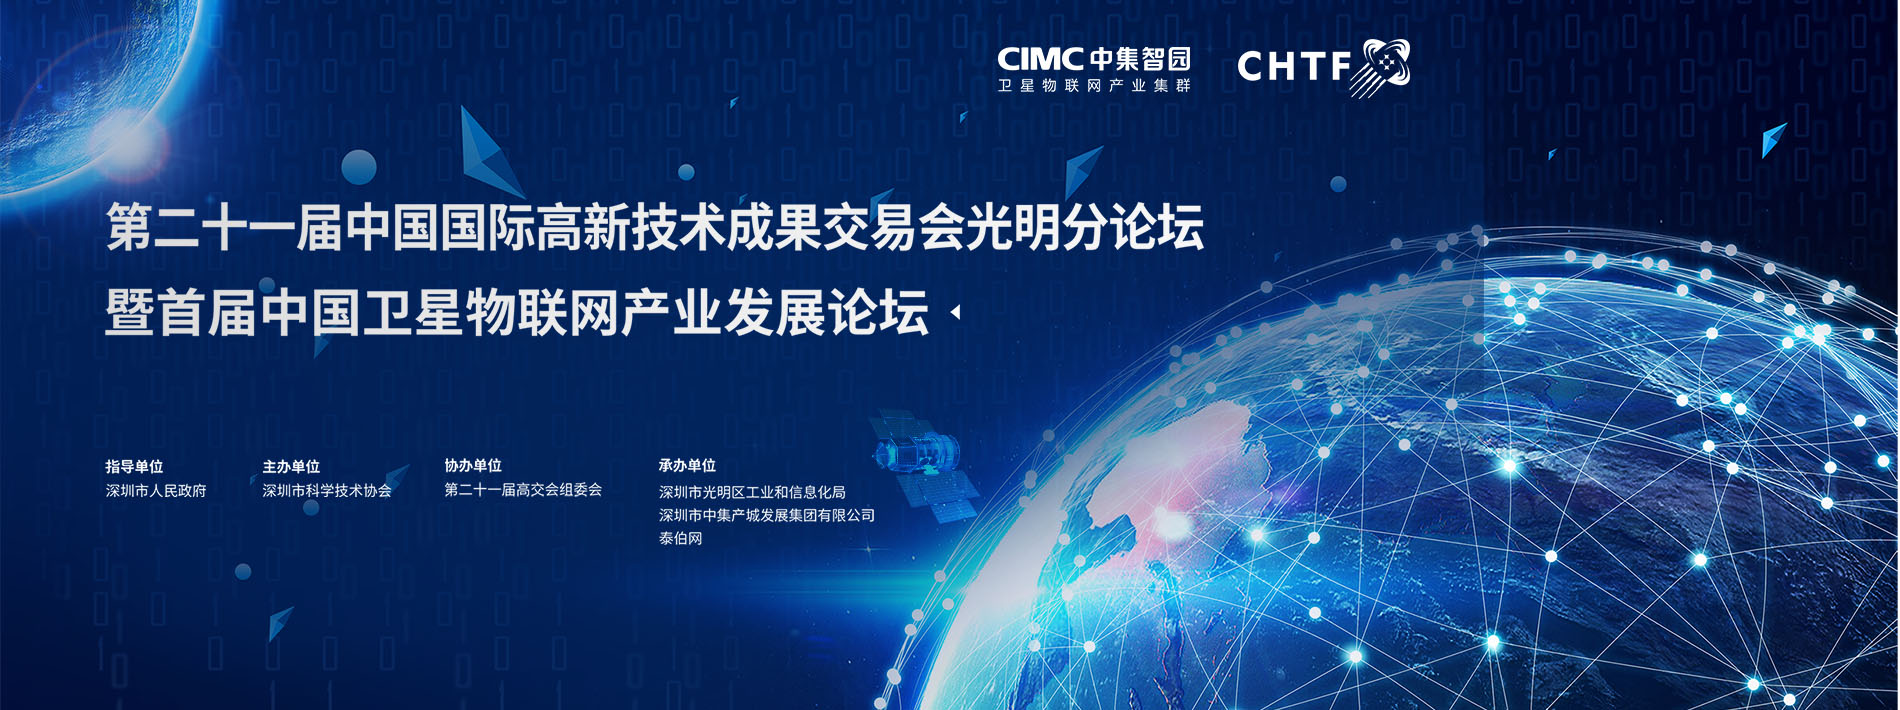 第二十一届中国国际高新技术成果交易会 暨首届中国卫星物联网产业发展论坛